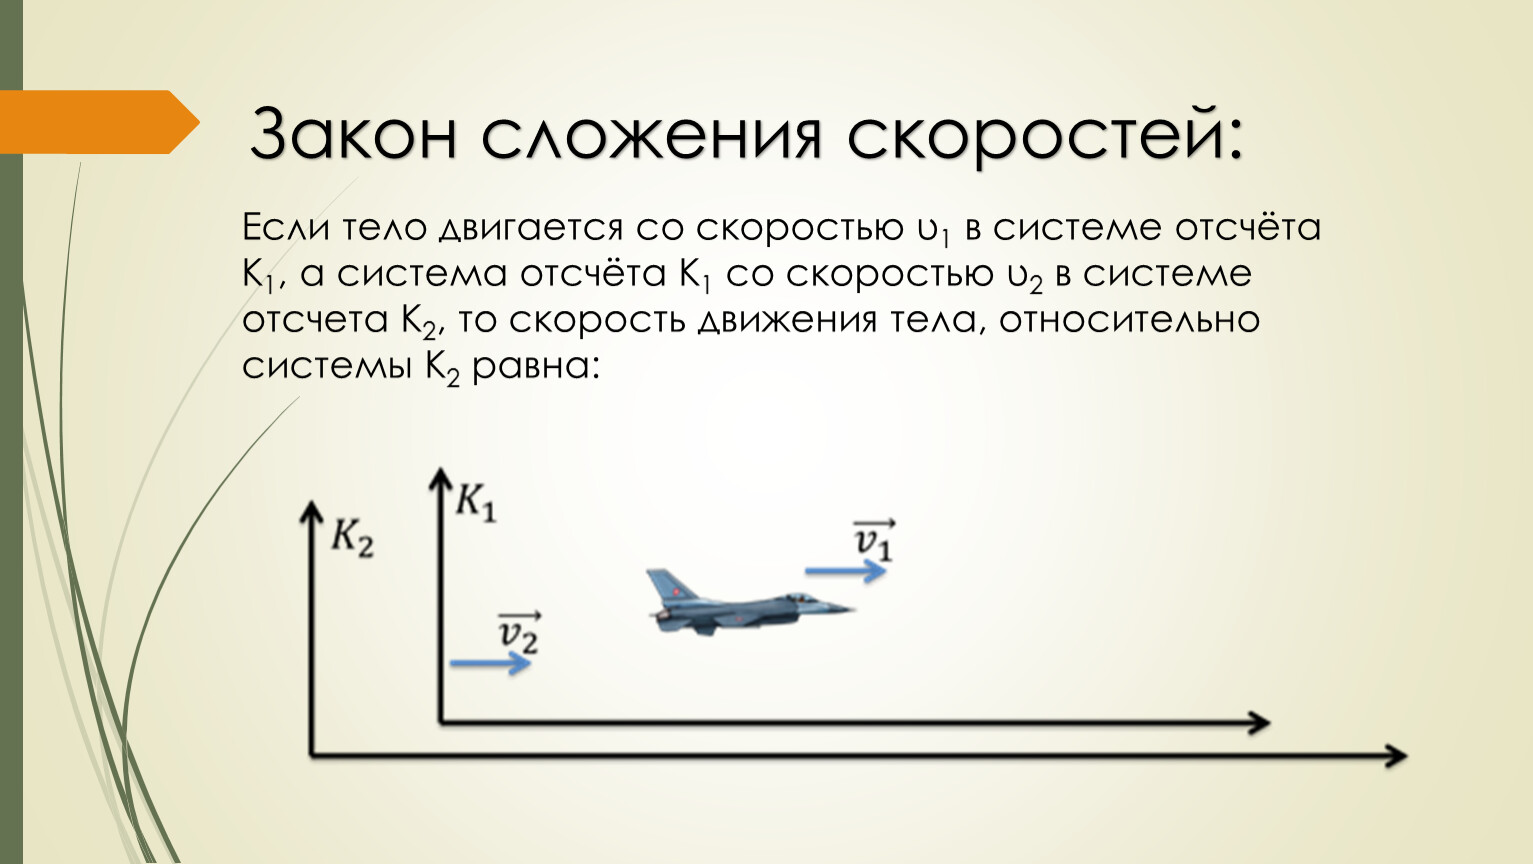 Самолет находящийся в полете преодолевает 135. Скорость самолета. Самолет летит со скоростью. Скорость самолета относительно земли. Скорость самолёта пассажирского в полете.